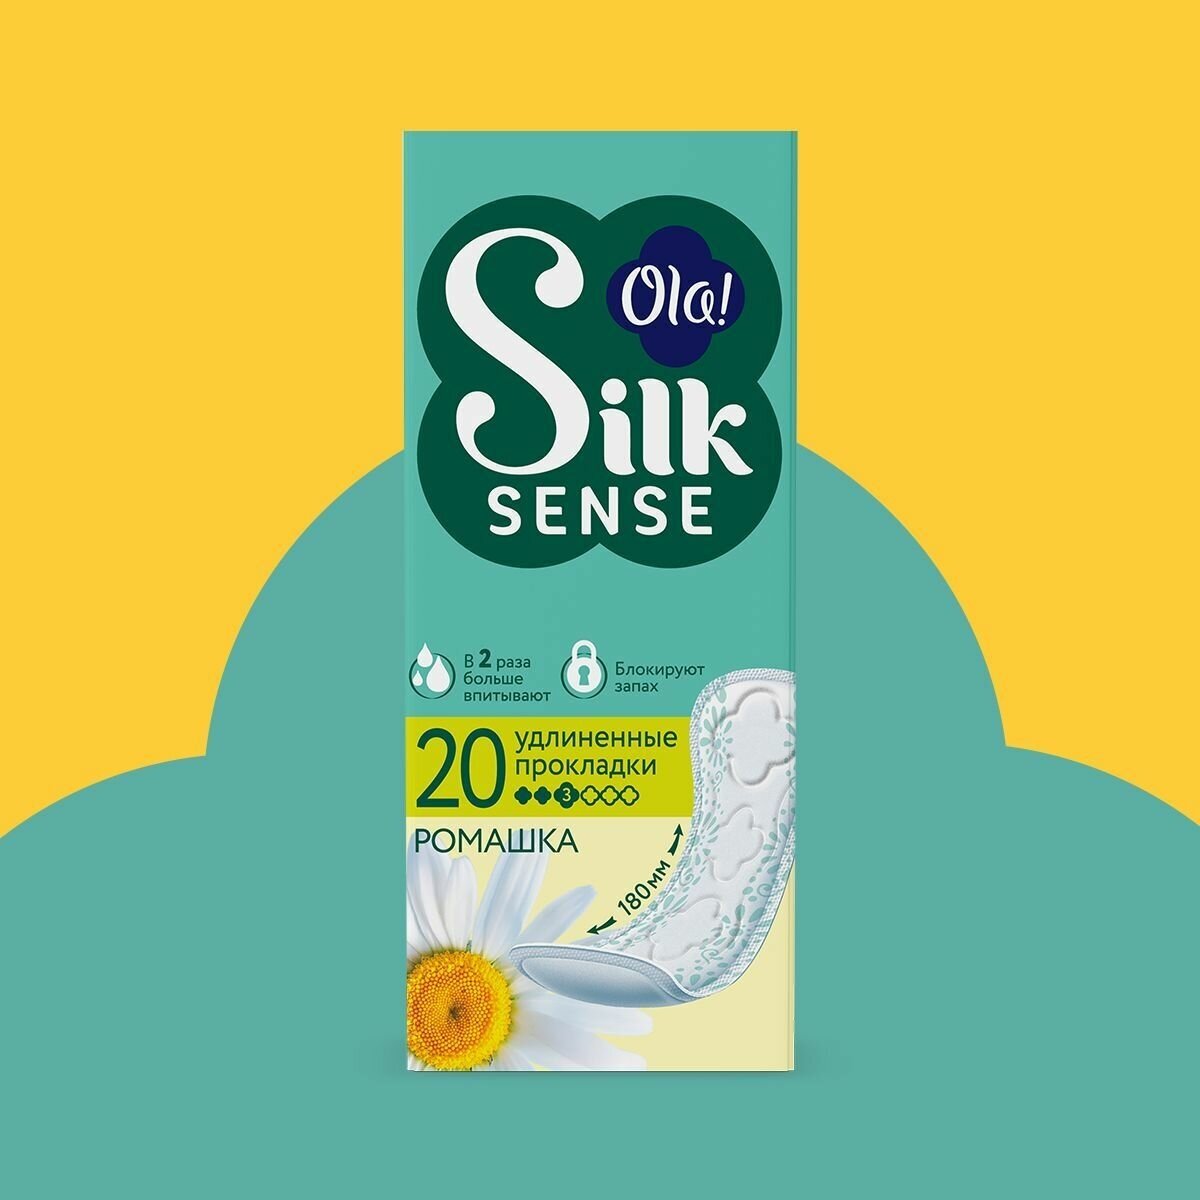 Прокладки женские ежедневные удлиненные Ola! Silk Sense, аромат Ромашка, 20шт.